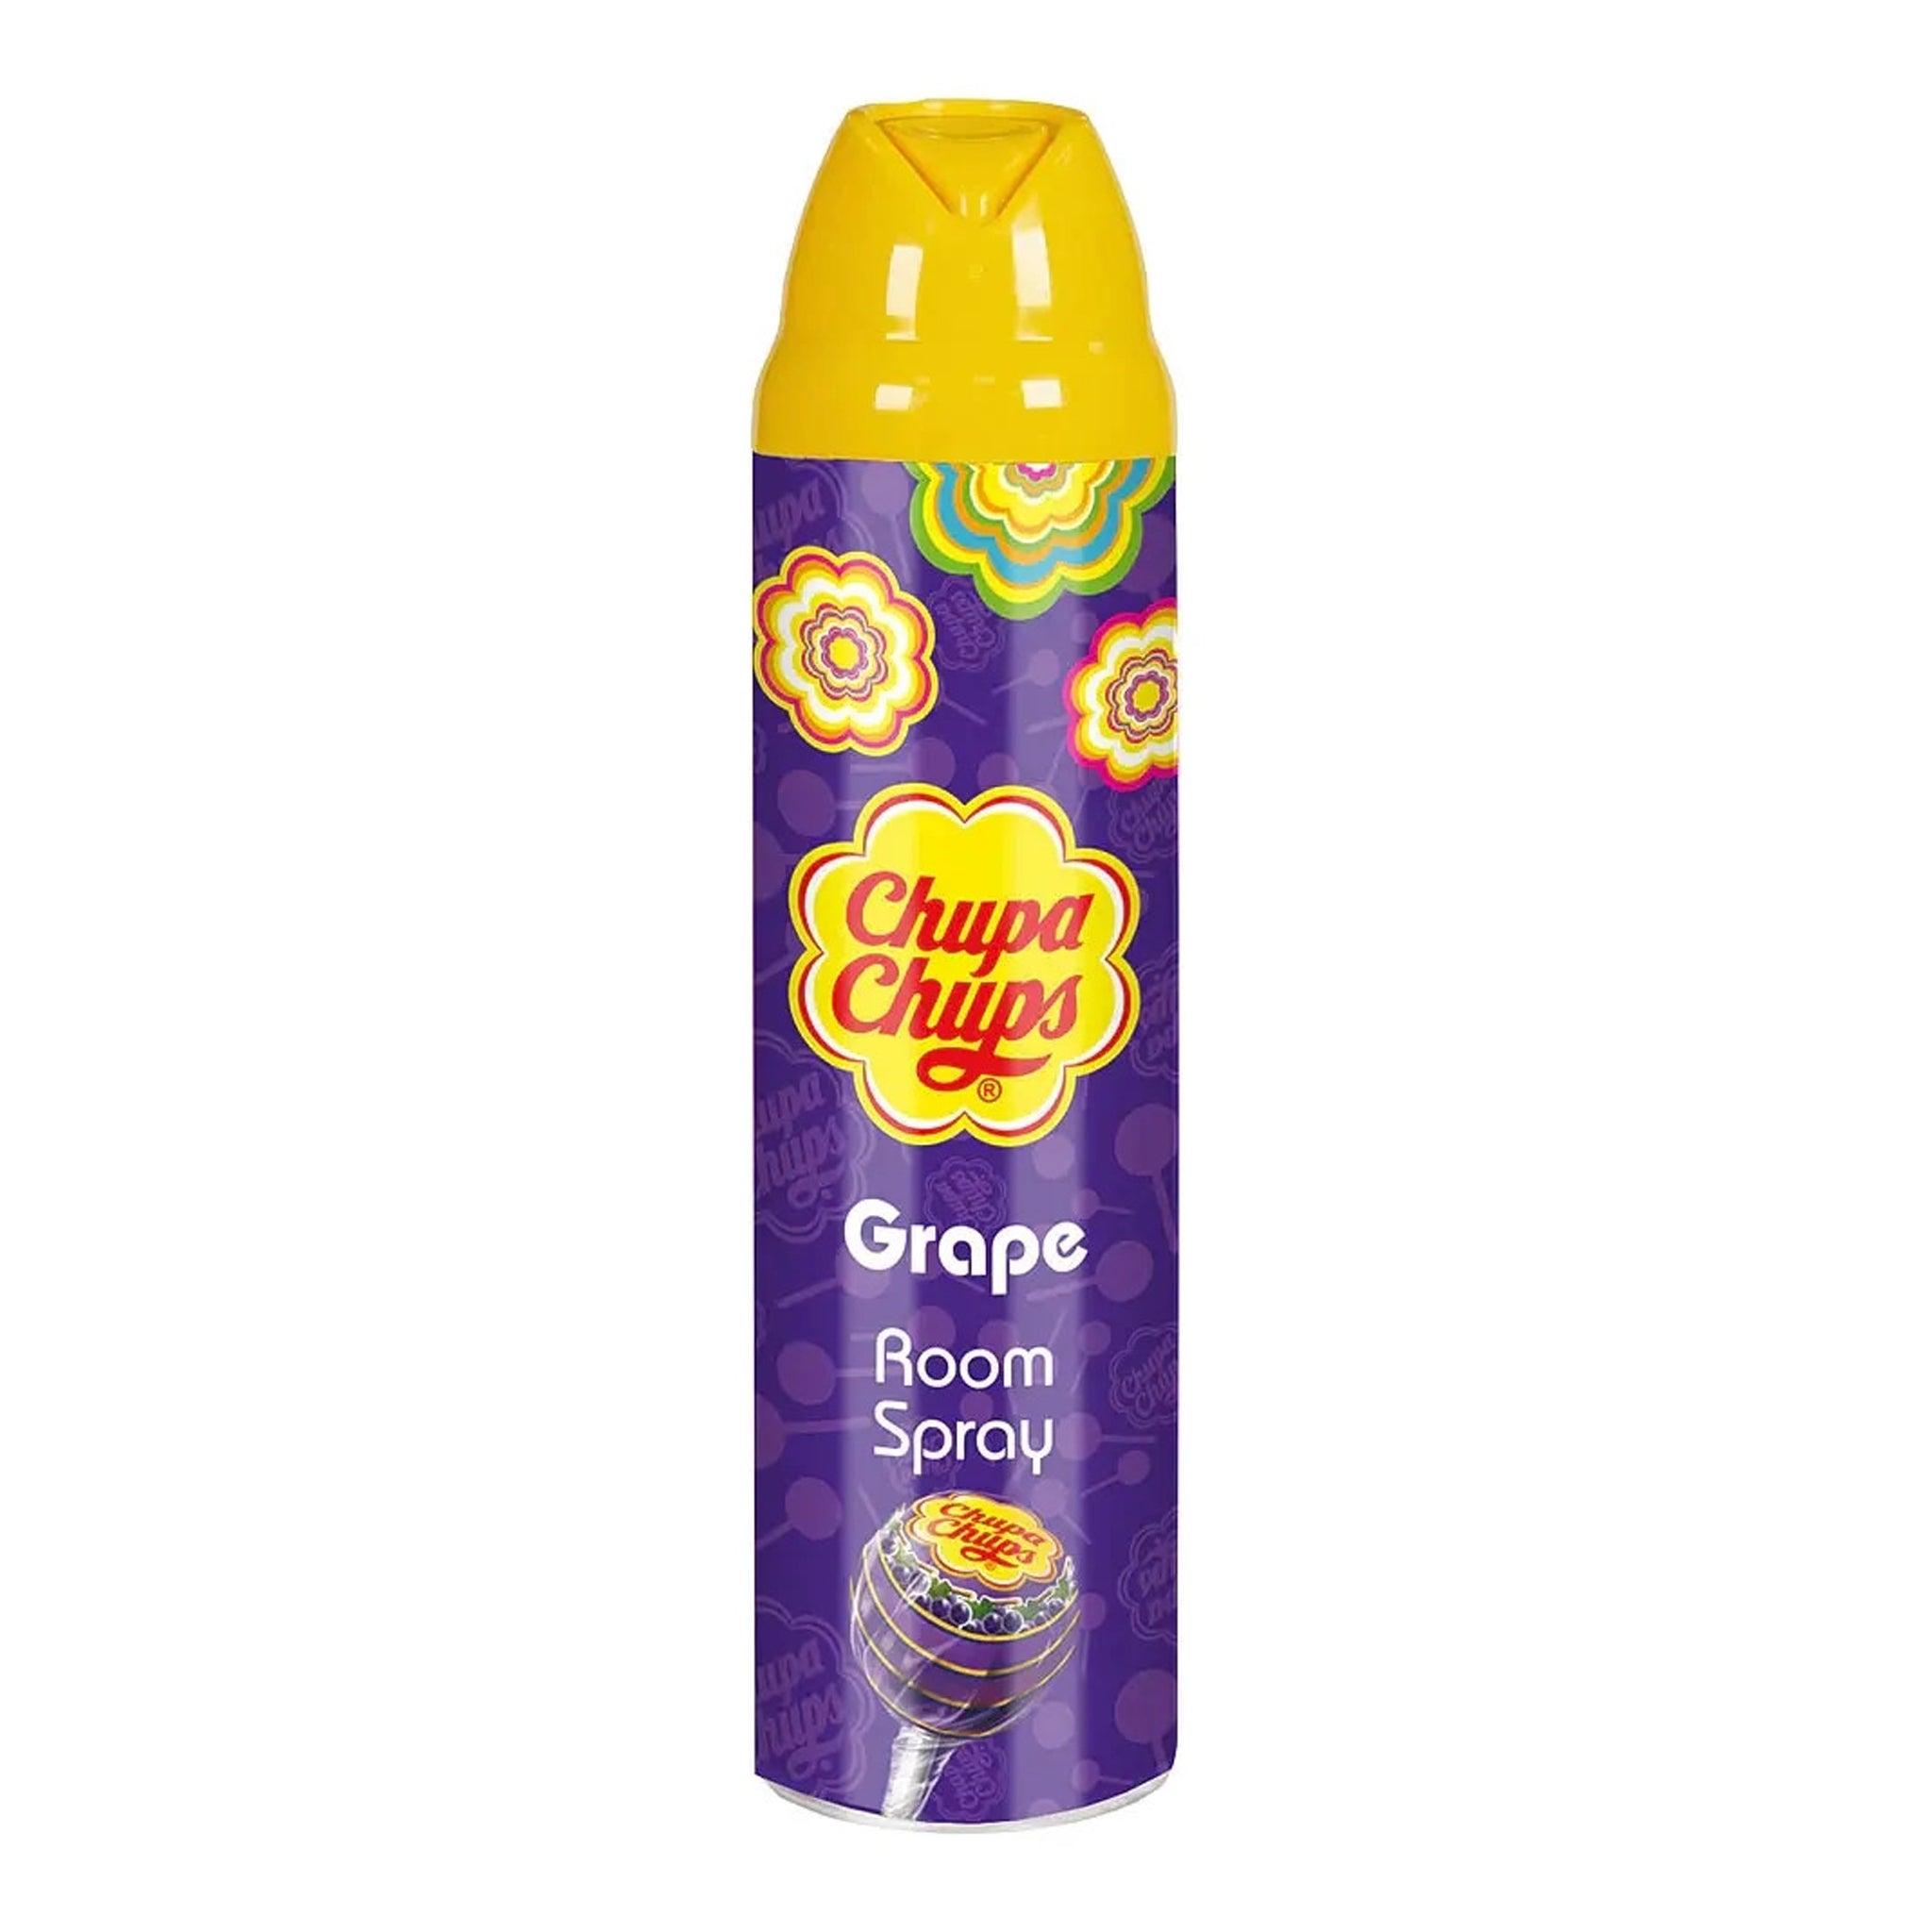 Chupa Chups Room Spray Grape ספריי בישום צ'ופה בריח ענבים